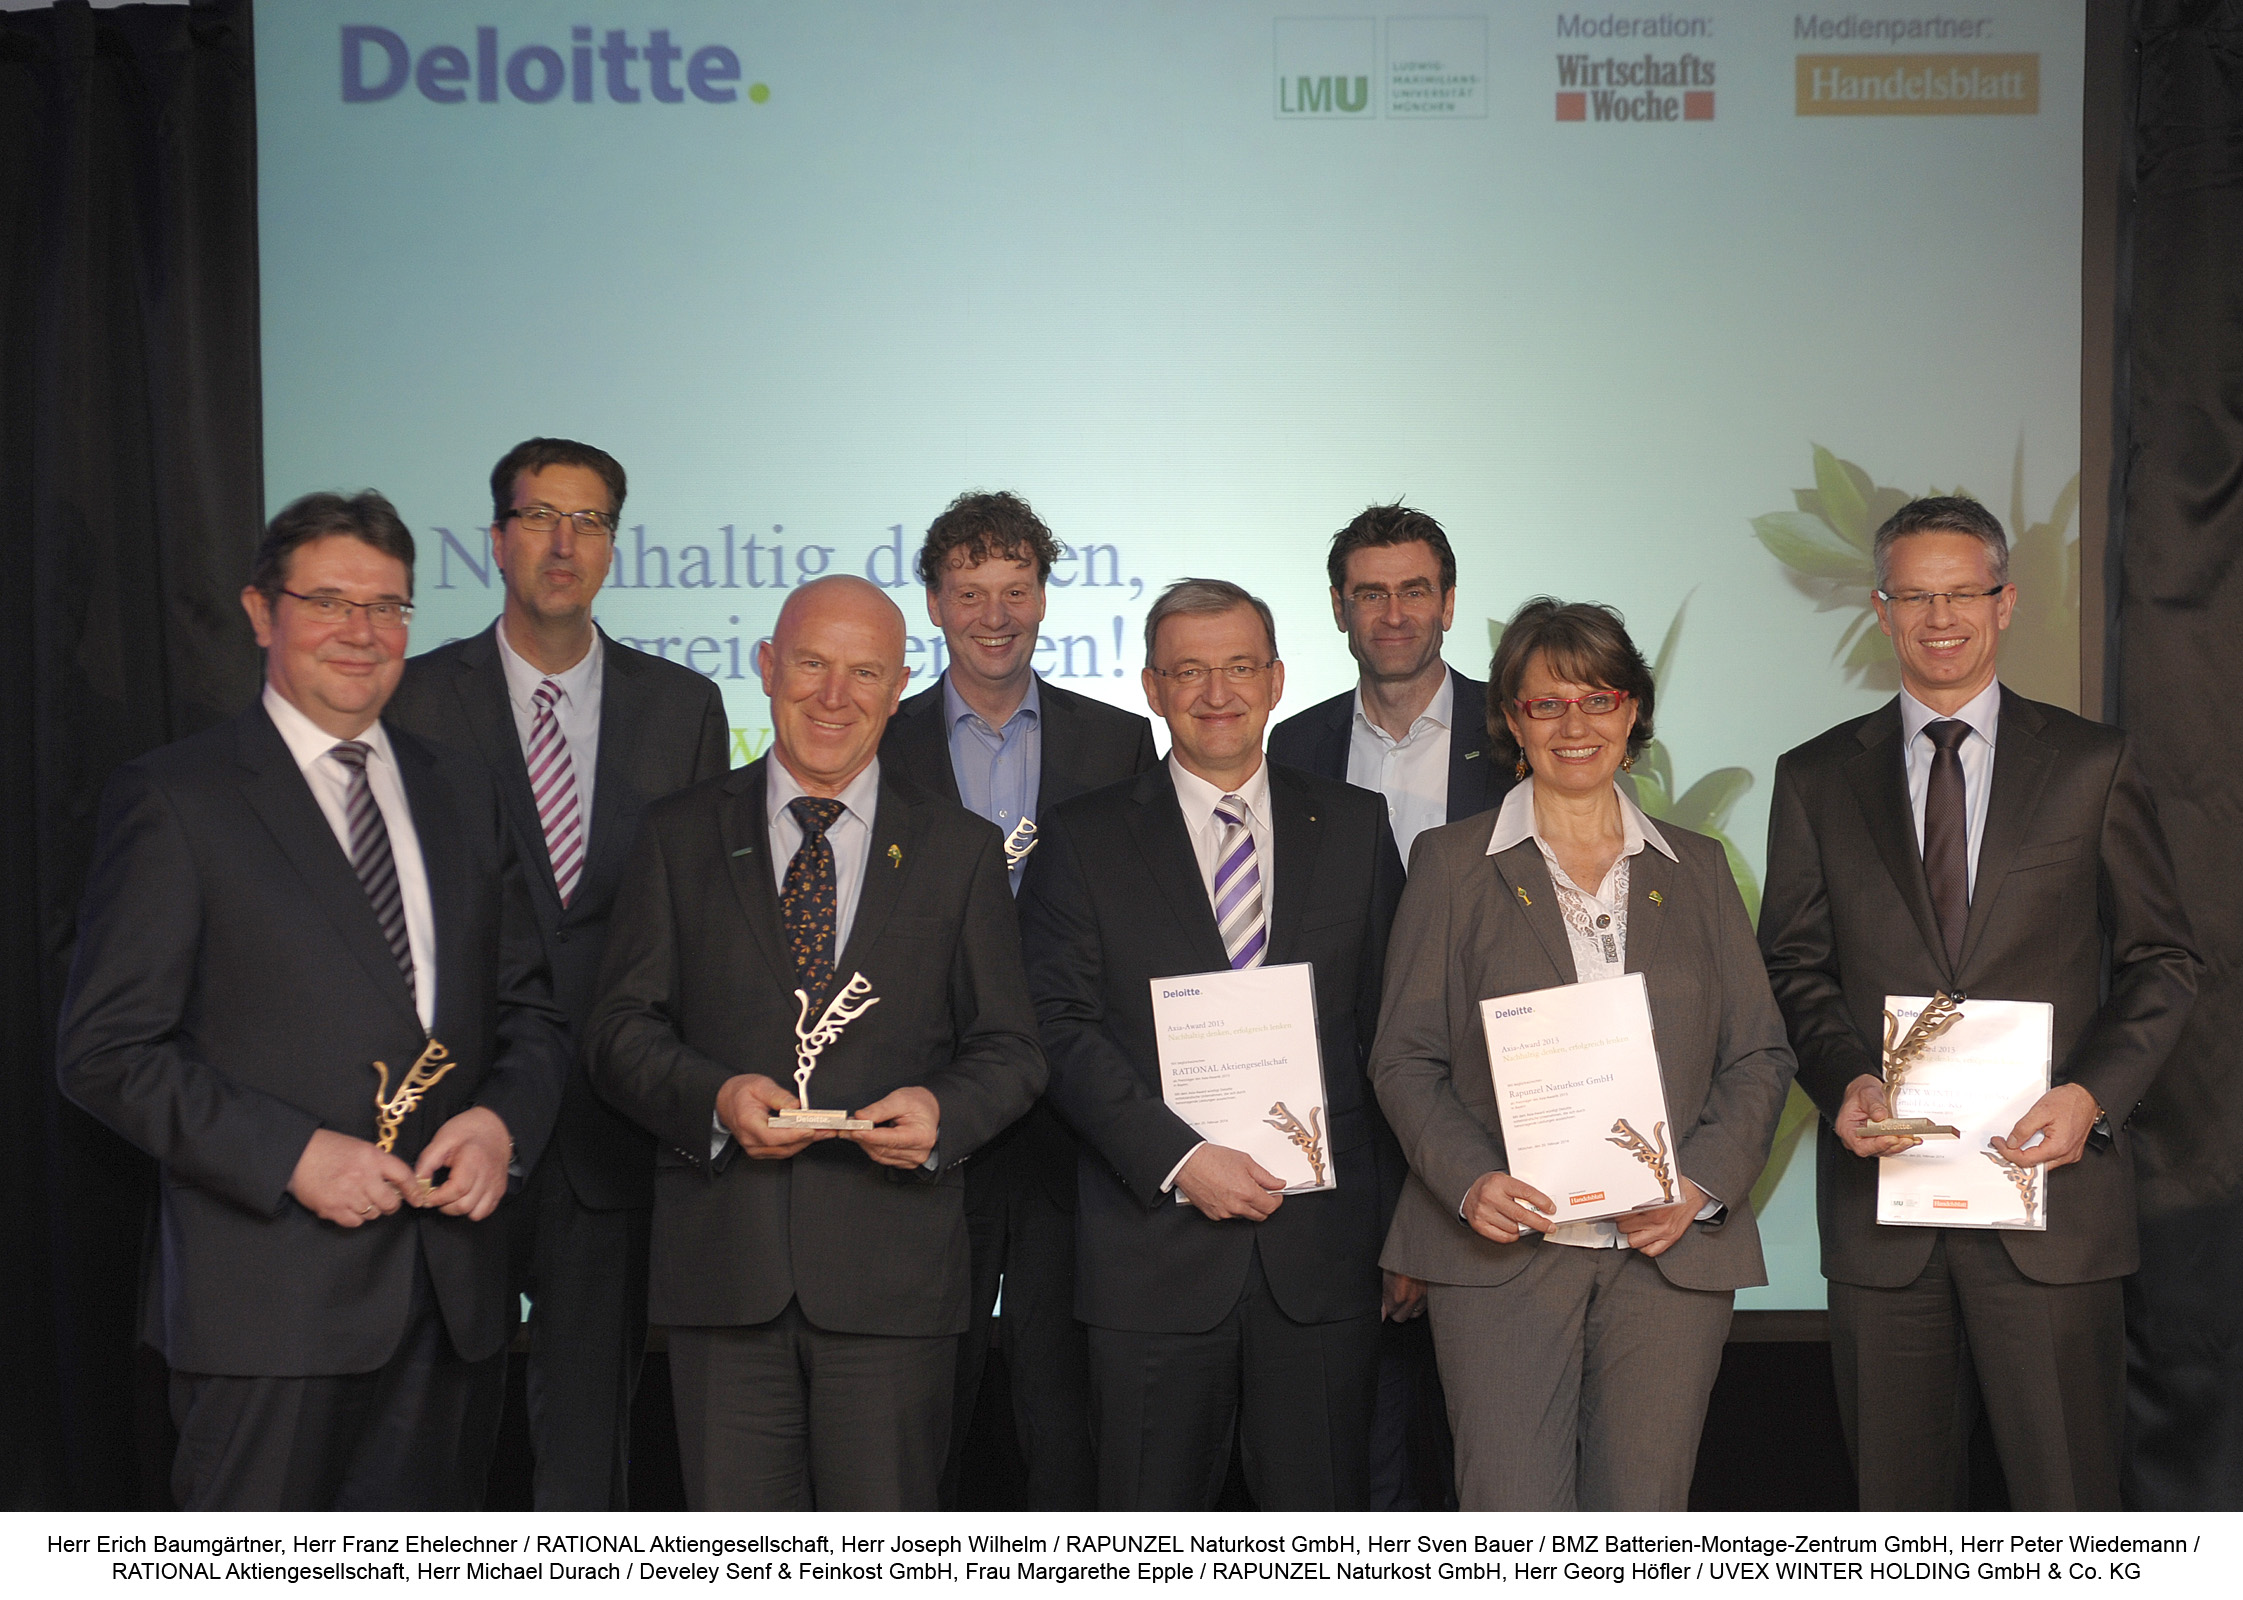 Die Preisträger des 13. Axia-Awards aus Bayern: Sie verbinden langfristige Unternehmensplanung, soziale Werte und finanzielle Unabhängigkeit.